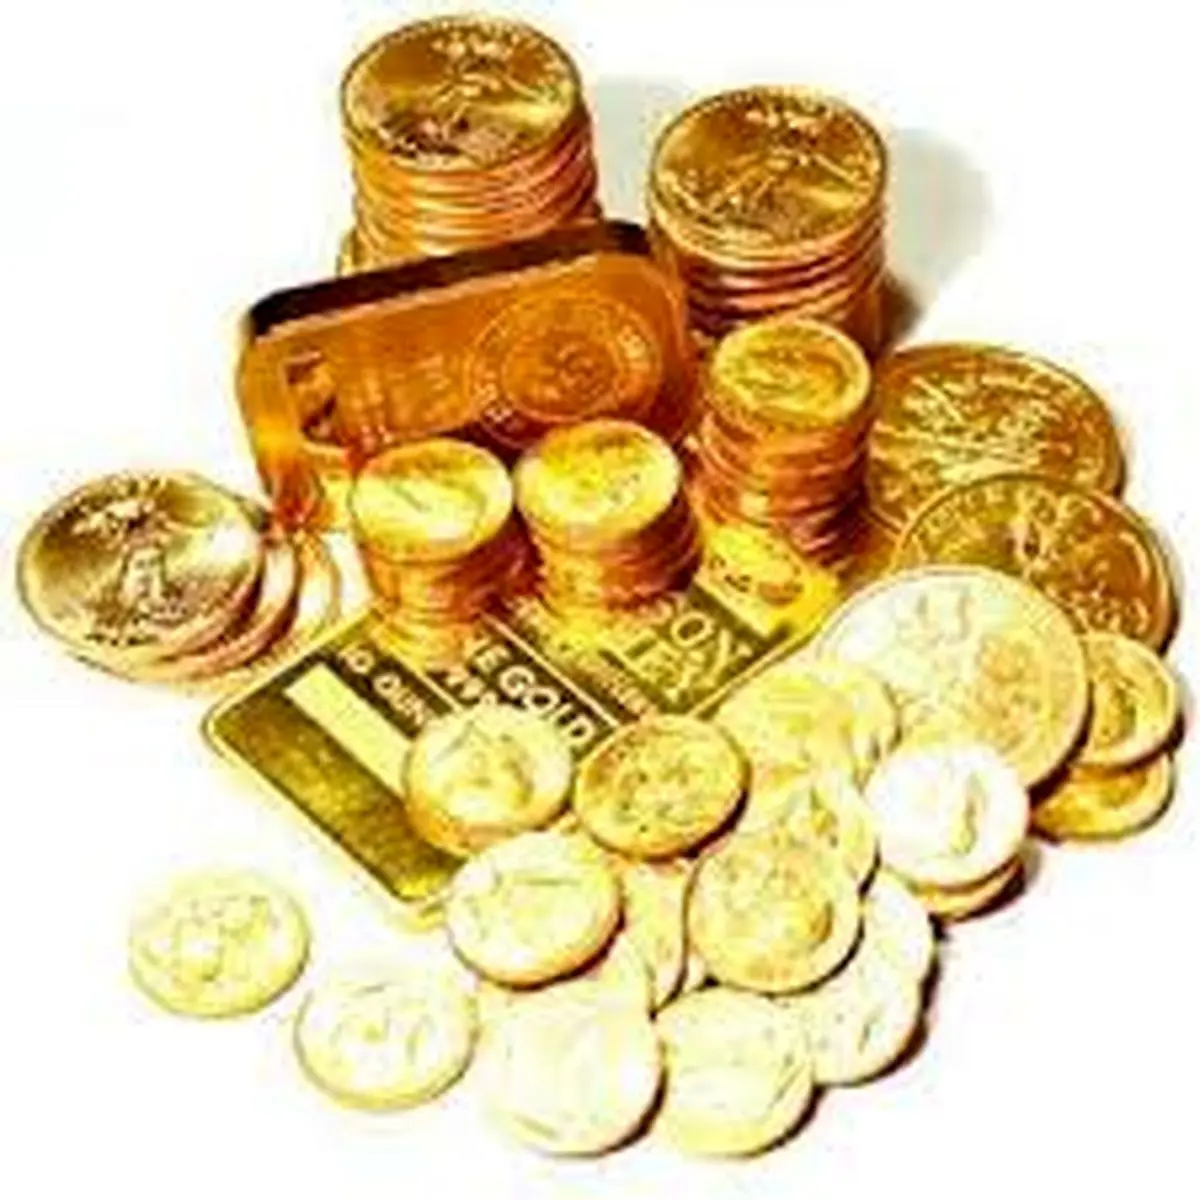  ثبت رکودهای جدید قیمتی در بازار سکه و طلا